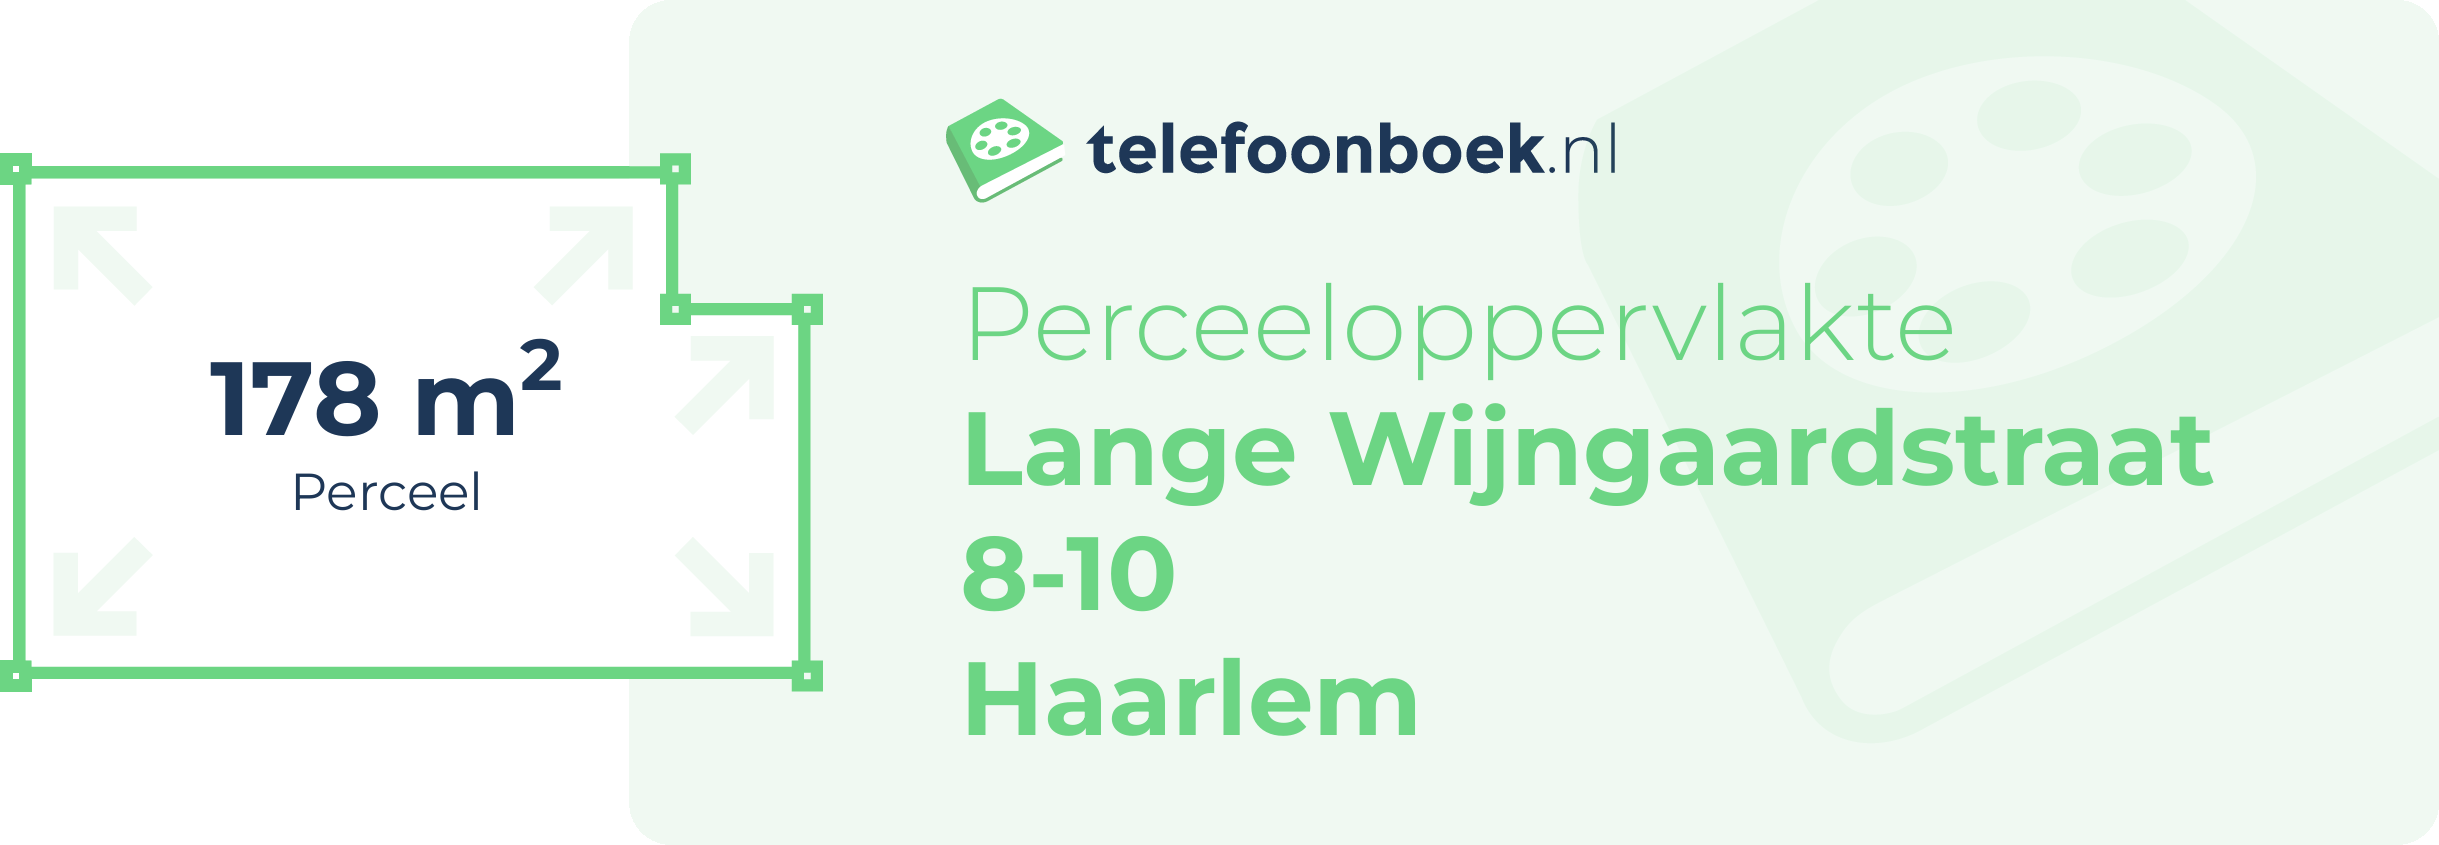 Perceeloppervlakte Lange Wijngaardstraat 8-10 Haarlem